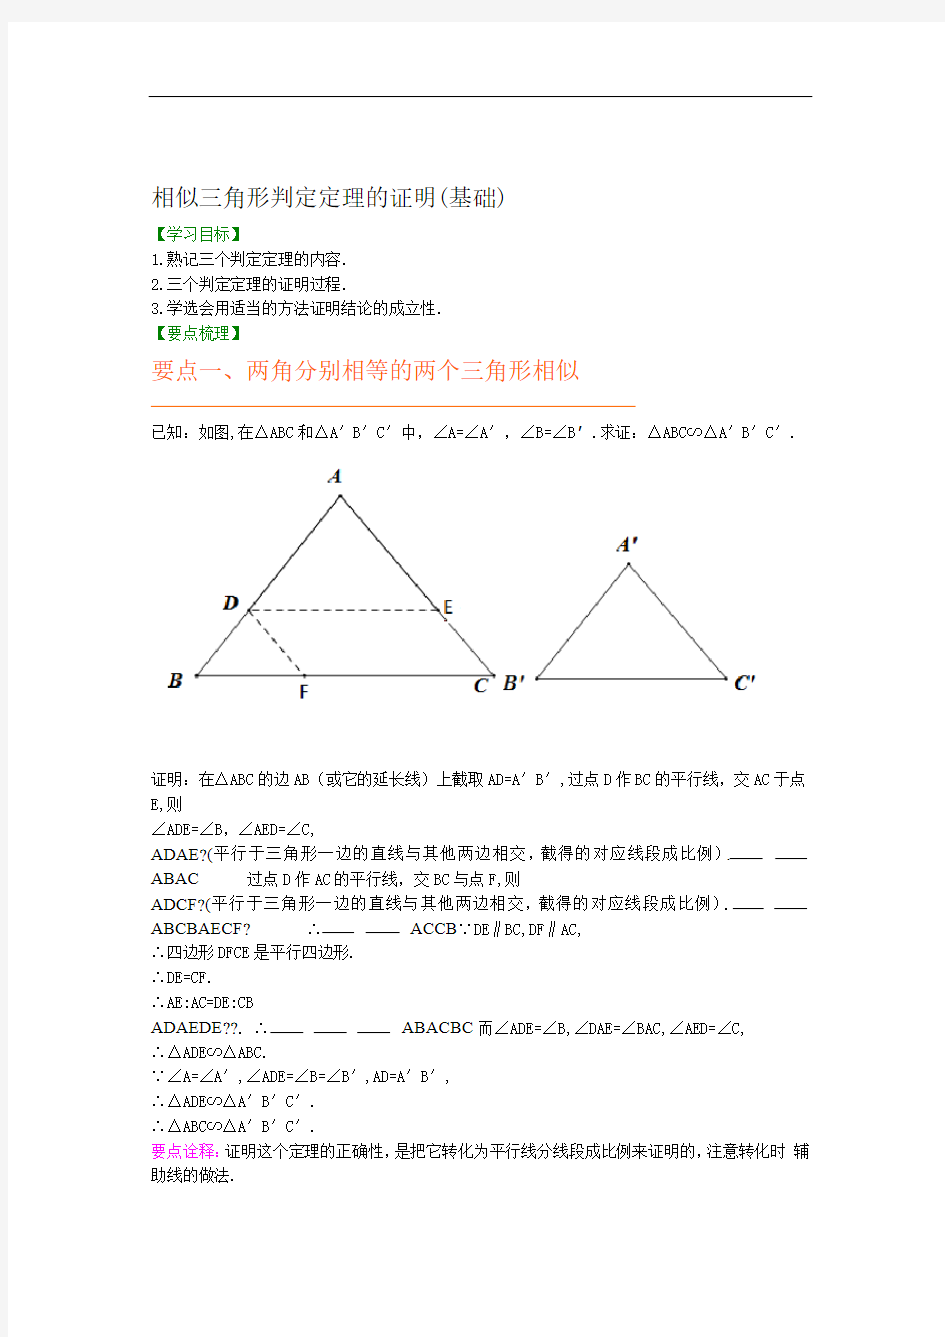 15相似三角形判定定理的证明知识讲解基础